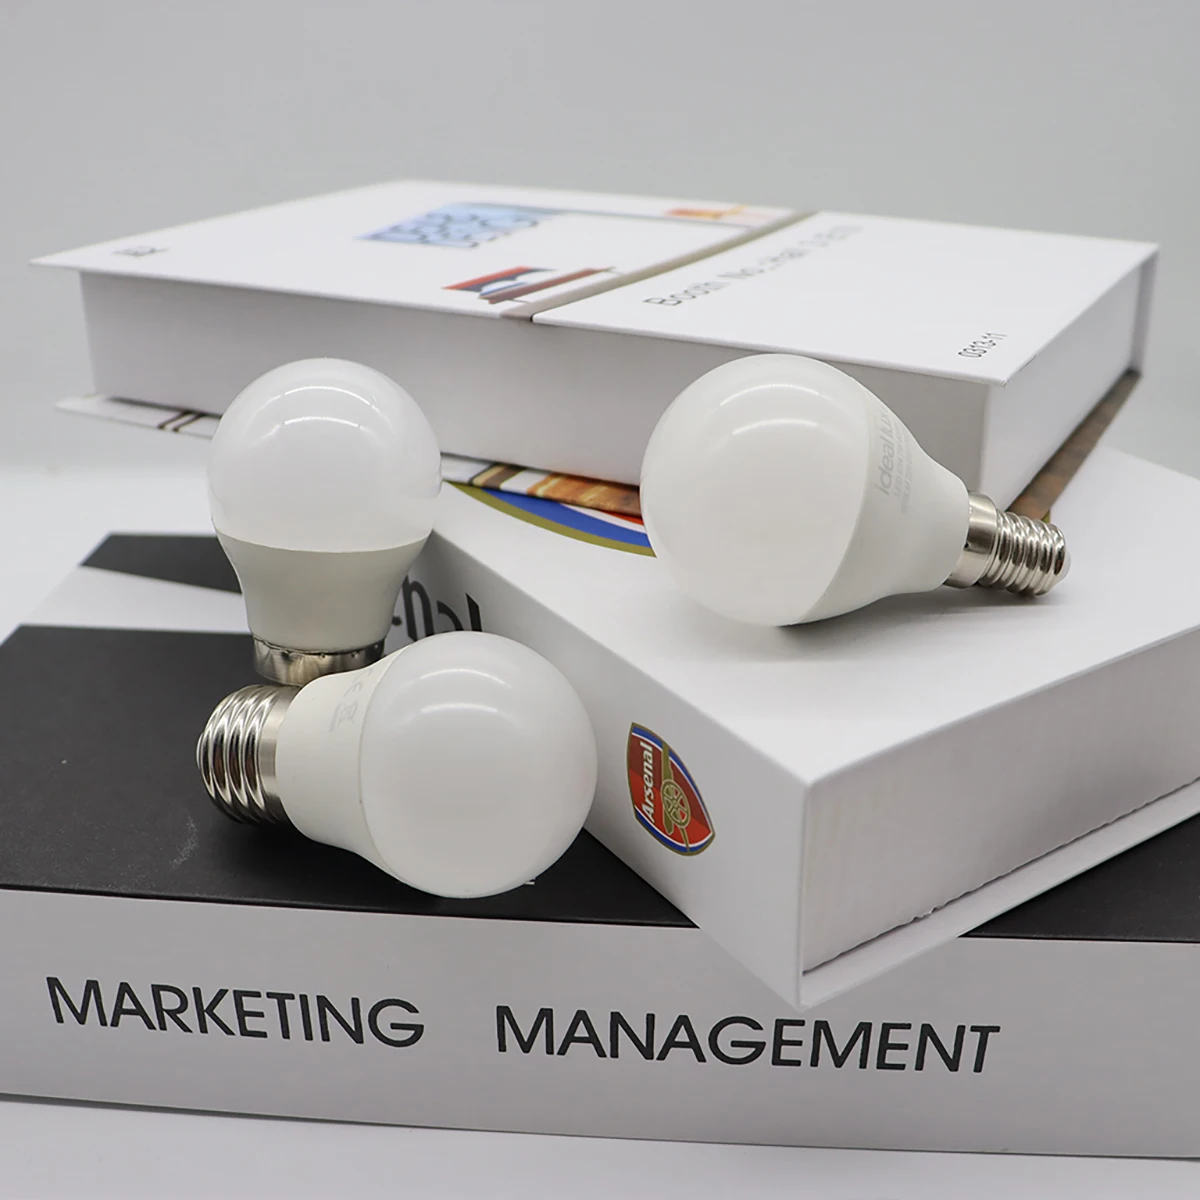 8 ADET LED mum ışığı mini ampul ışık AC120V 220V E27 E14 hiçbir strobe sıcak beyaz ışık 3W-7W için uygundur ofis ev aydınlatma